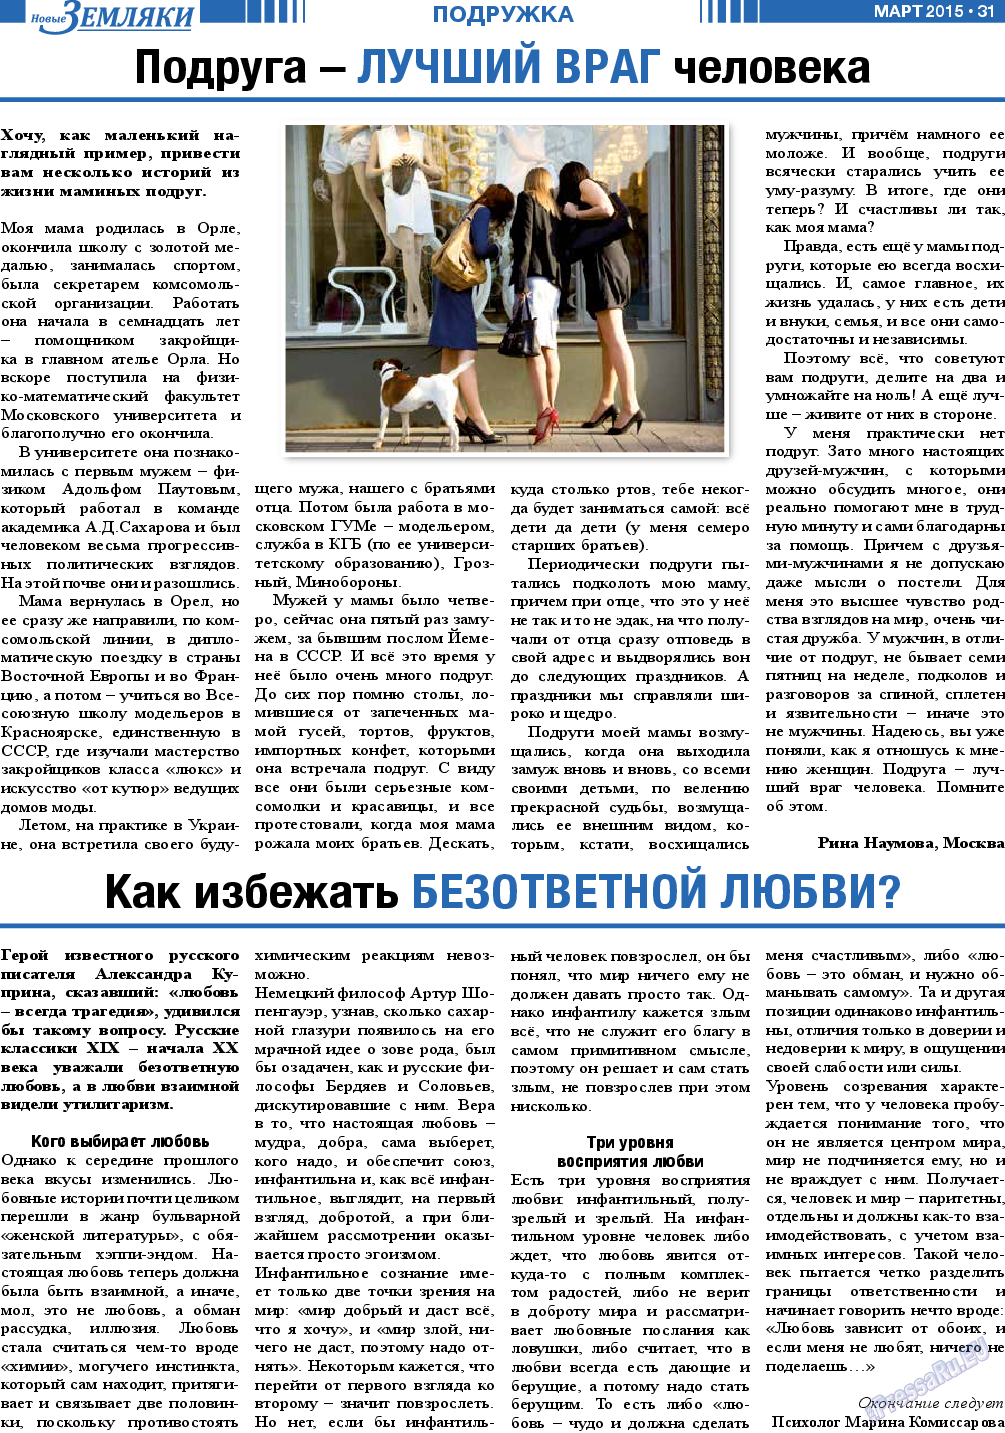 Новые Земляки, газета. 2015 №3 стр.31